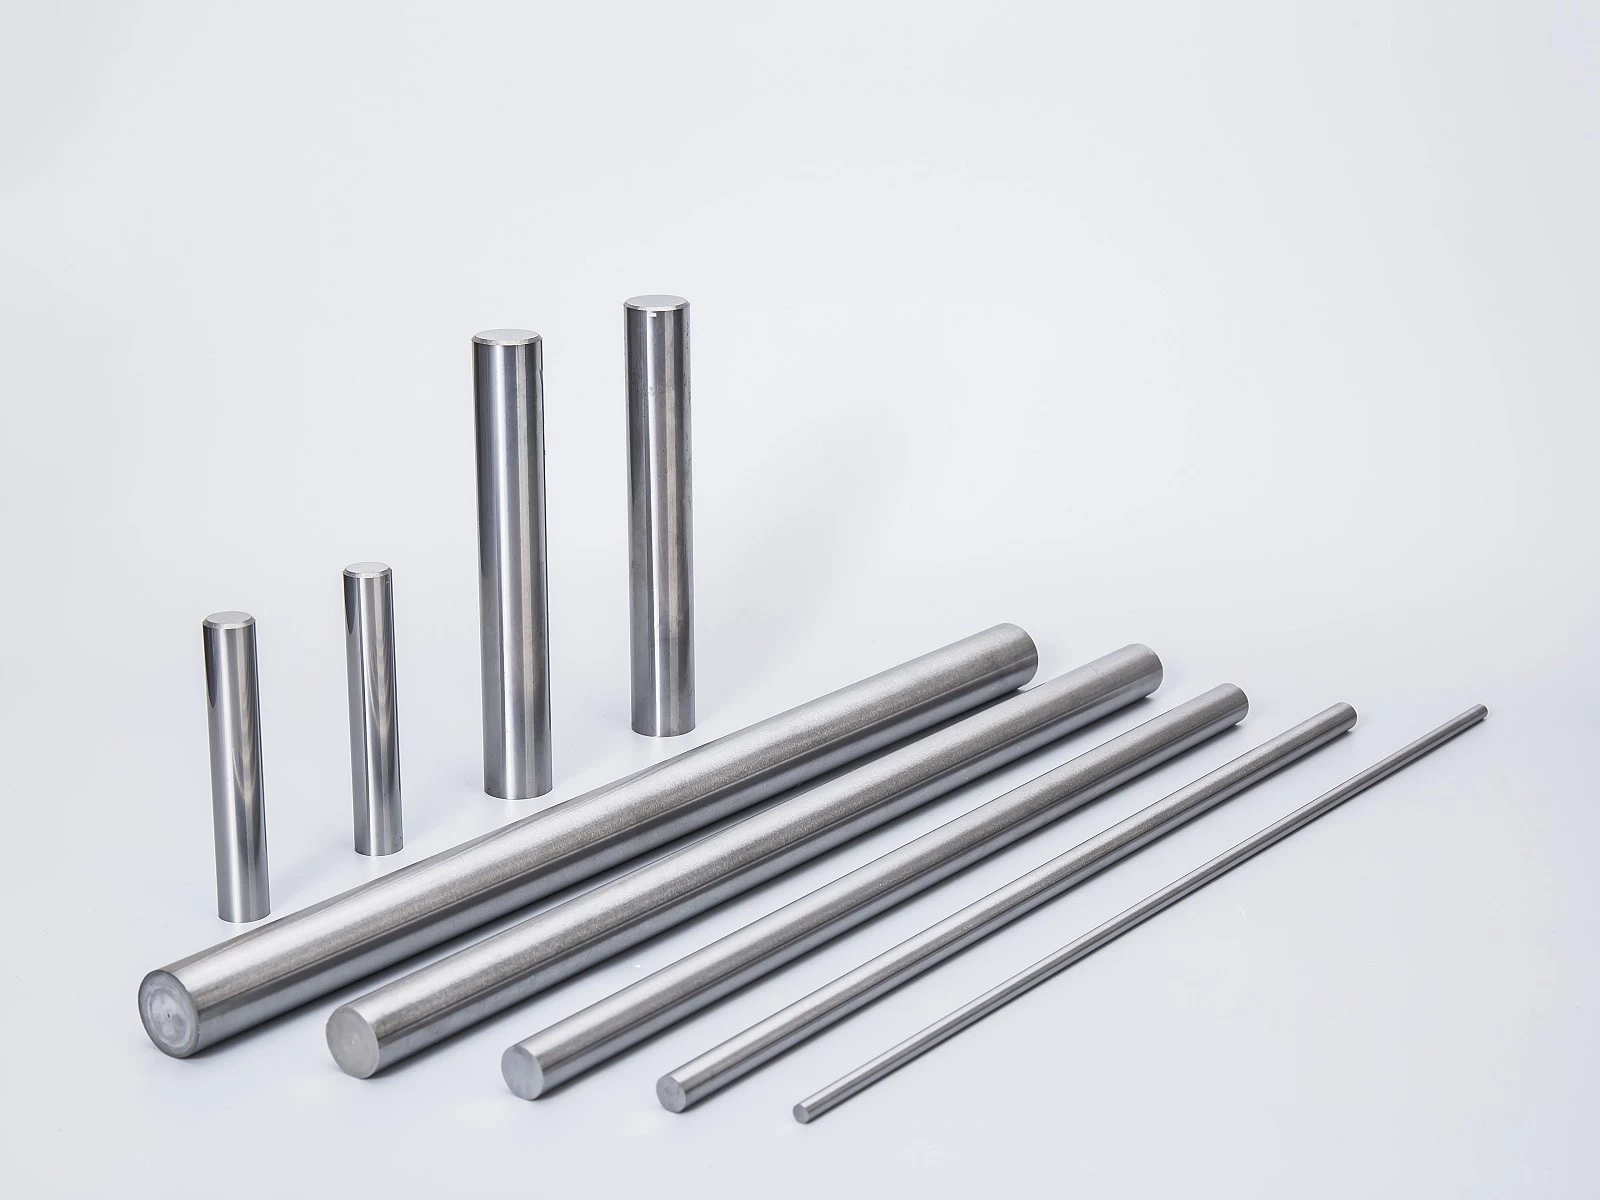 China Tungsten Carbide Rod manufacturer